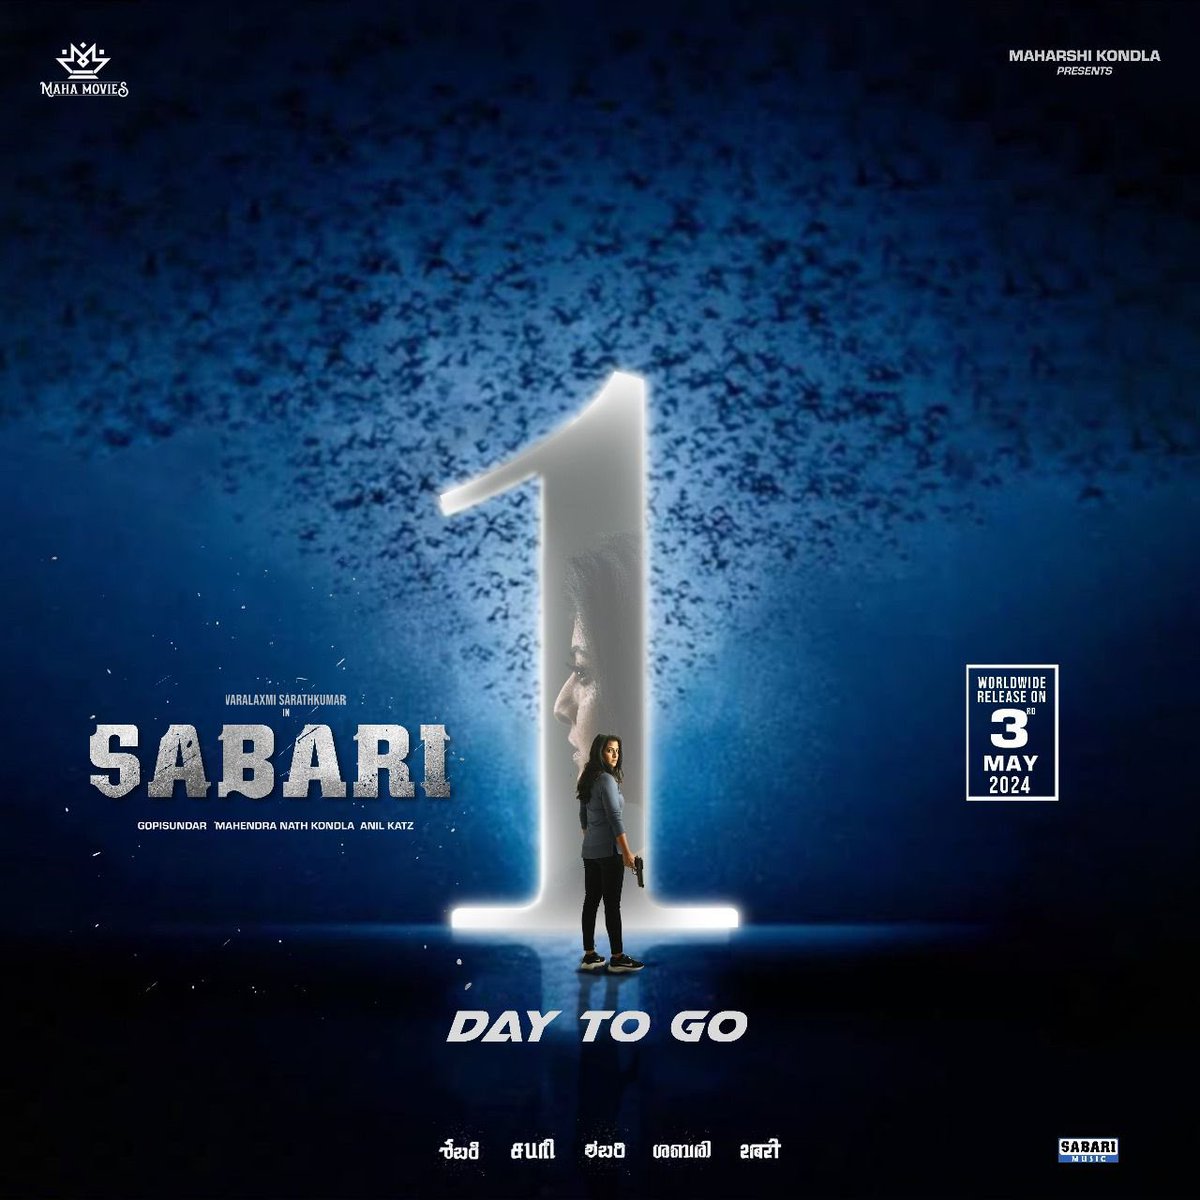 #Sabari from tomorrow in theatres 💥

#VaralaxmiSarathKumar #GopiSundar